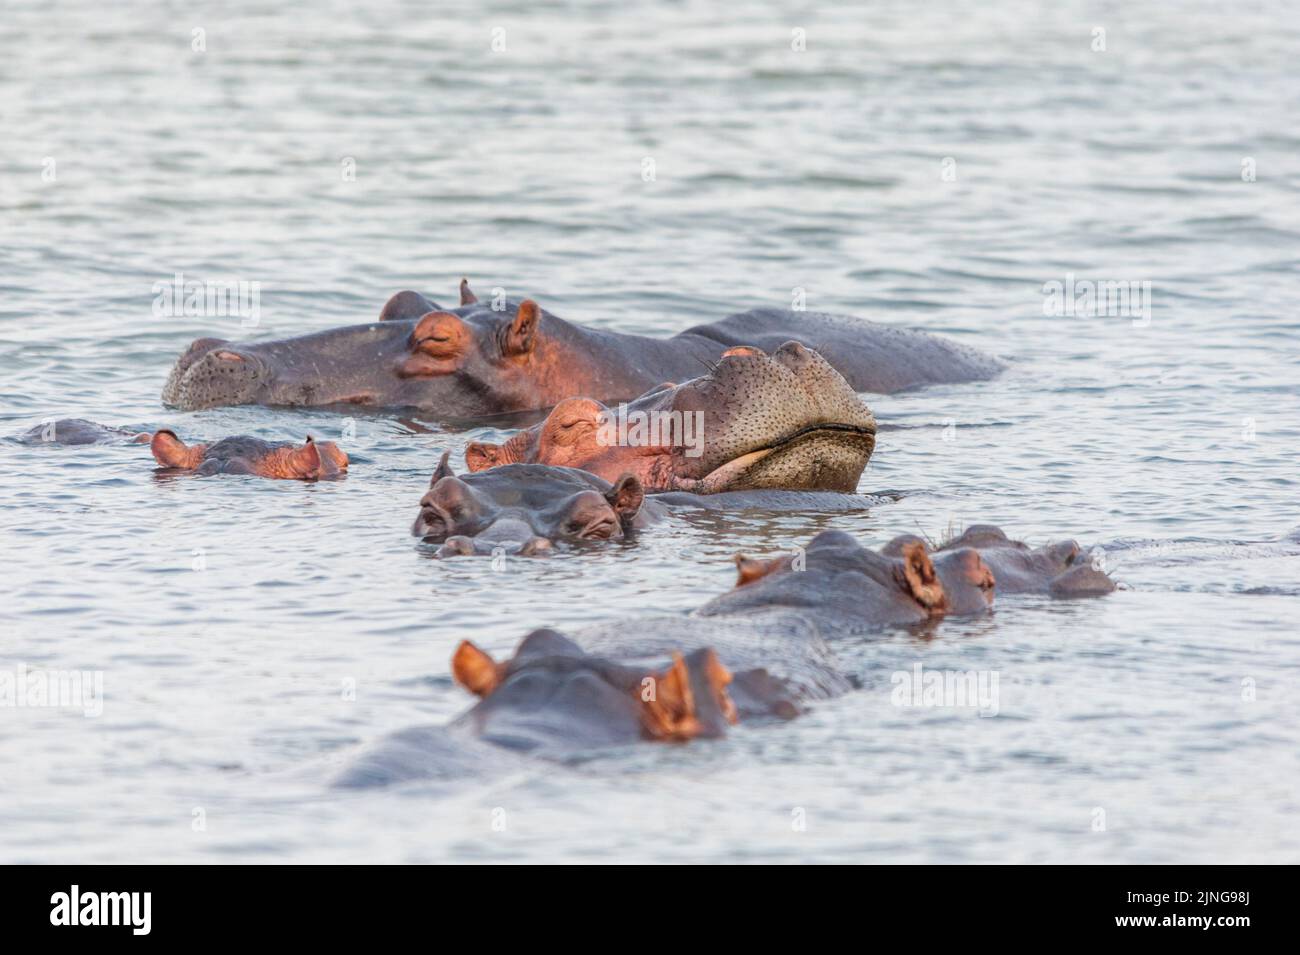 Ippopotamo che dorme in acqua con i coetanei, lago di Santa Lucia, Sudafrica. Osservazione della fauna selvatica in habitat naturale Foto Stock